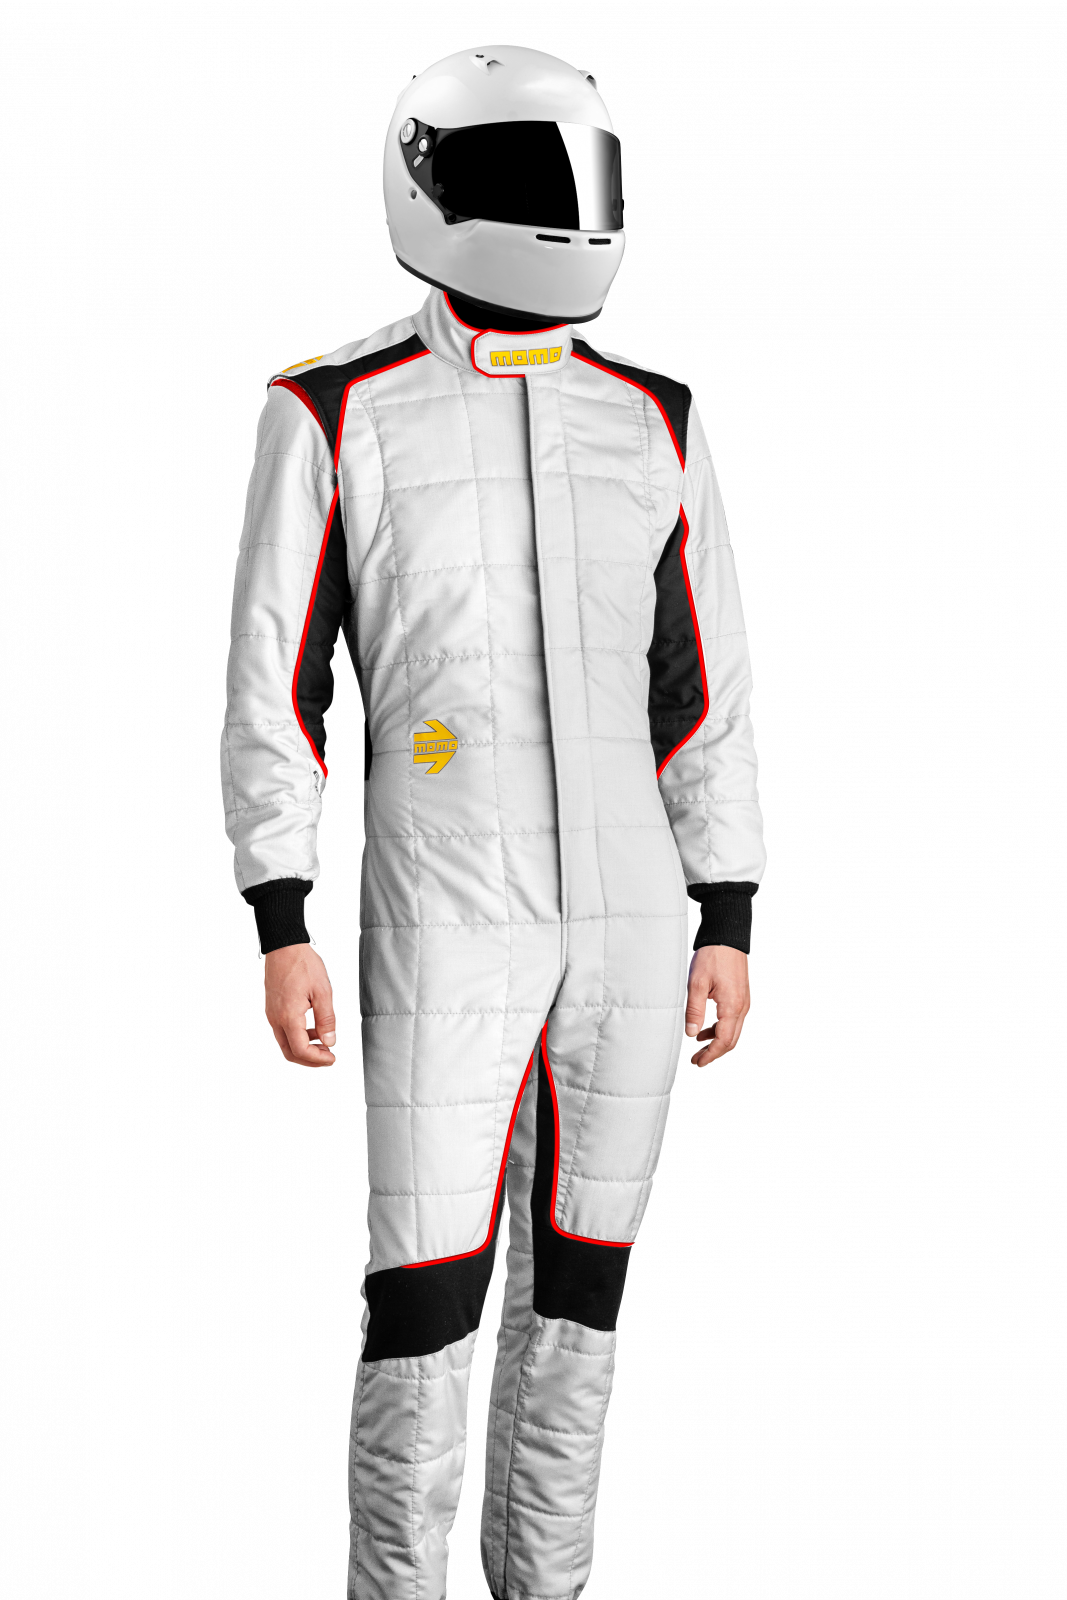 MOMO Corsa Evo White Size 62 Racing Suit TUCOEVOWHT62